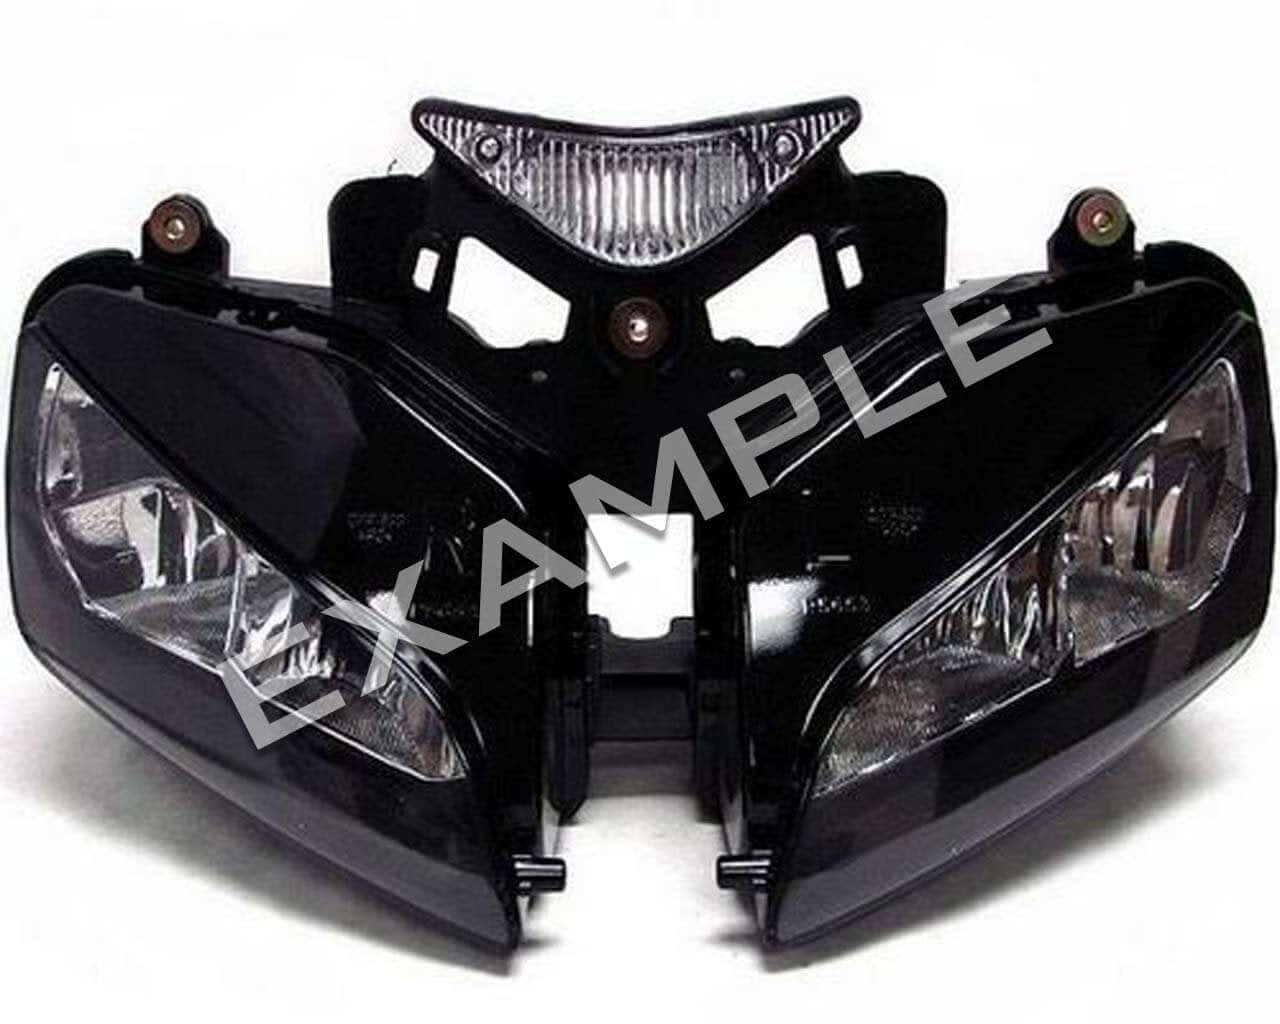 Honda CBR1000RR (03-07) - Bi-LED headlight lighting upgrade kit